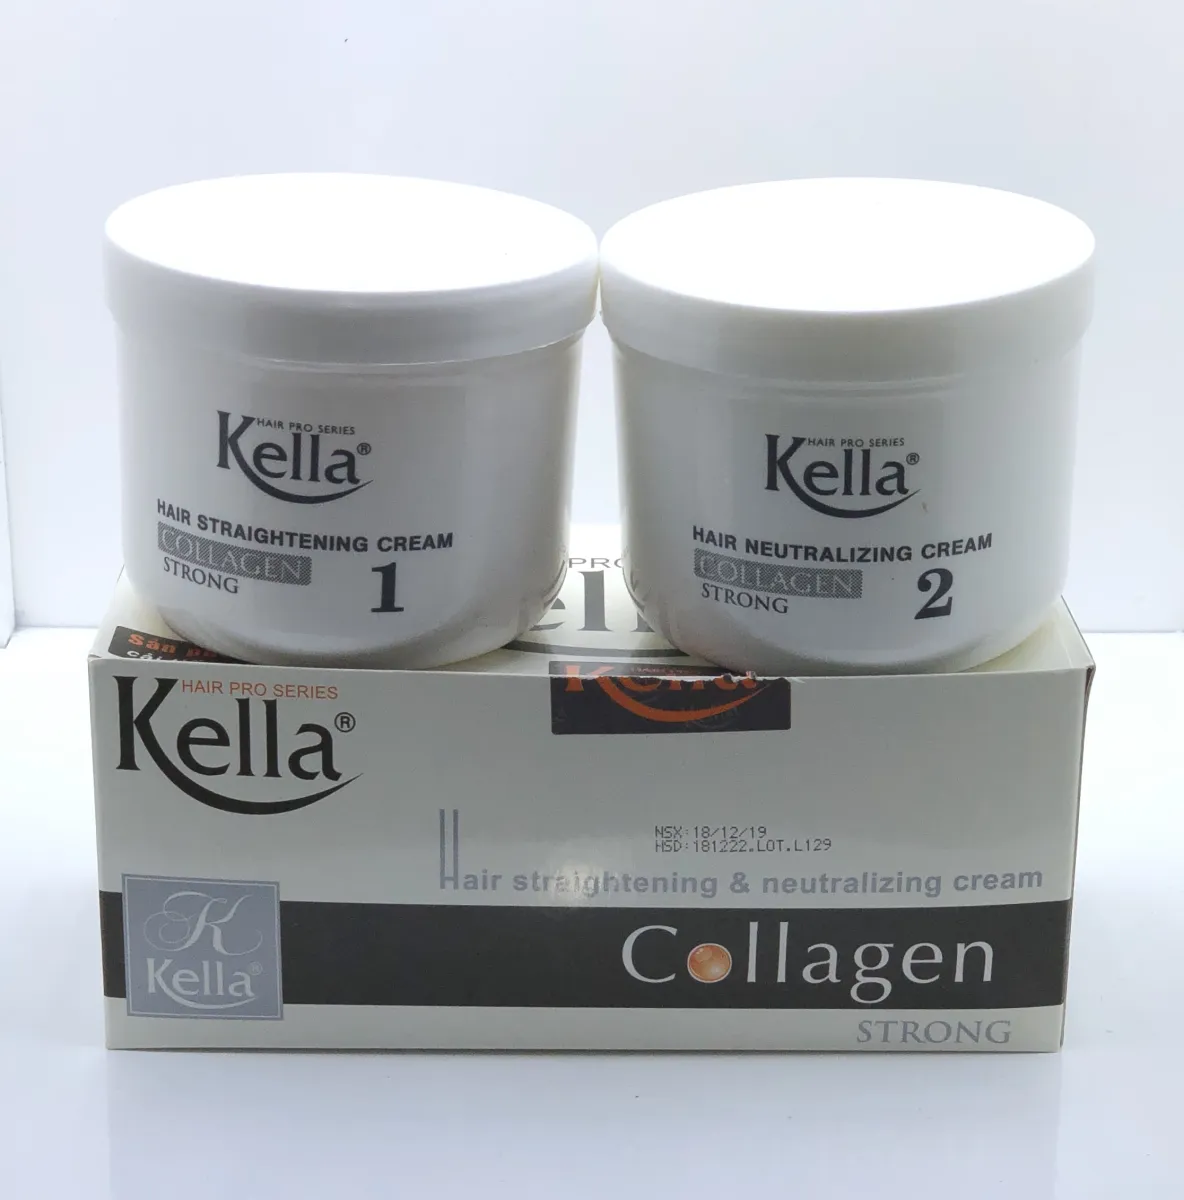 Kella Collagen: Bạn muốn sở hữu một làn da đẹp, trẻ trung và căng mịn không? Hãy sử dụng sản phẩm Kella Collagen - sản phẩm được chiết xuất từ thực phẩm chức năng Collagen tươi tốt nhất. Với Kella Collagen, bạn sẽ có được một làn da căng tràn sức sống và rạng rỡ như mơ ước. Còn chần chờ gì nữa, hãy xem ngay bức ảnh liên quan để biết thêm chi tiết về sản phẩm này.